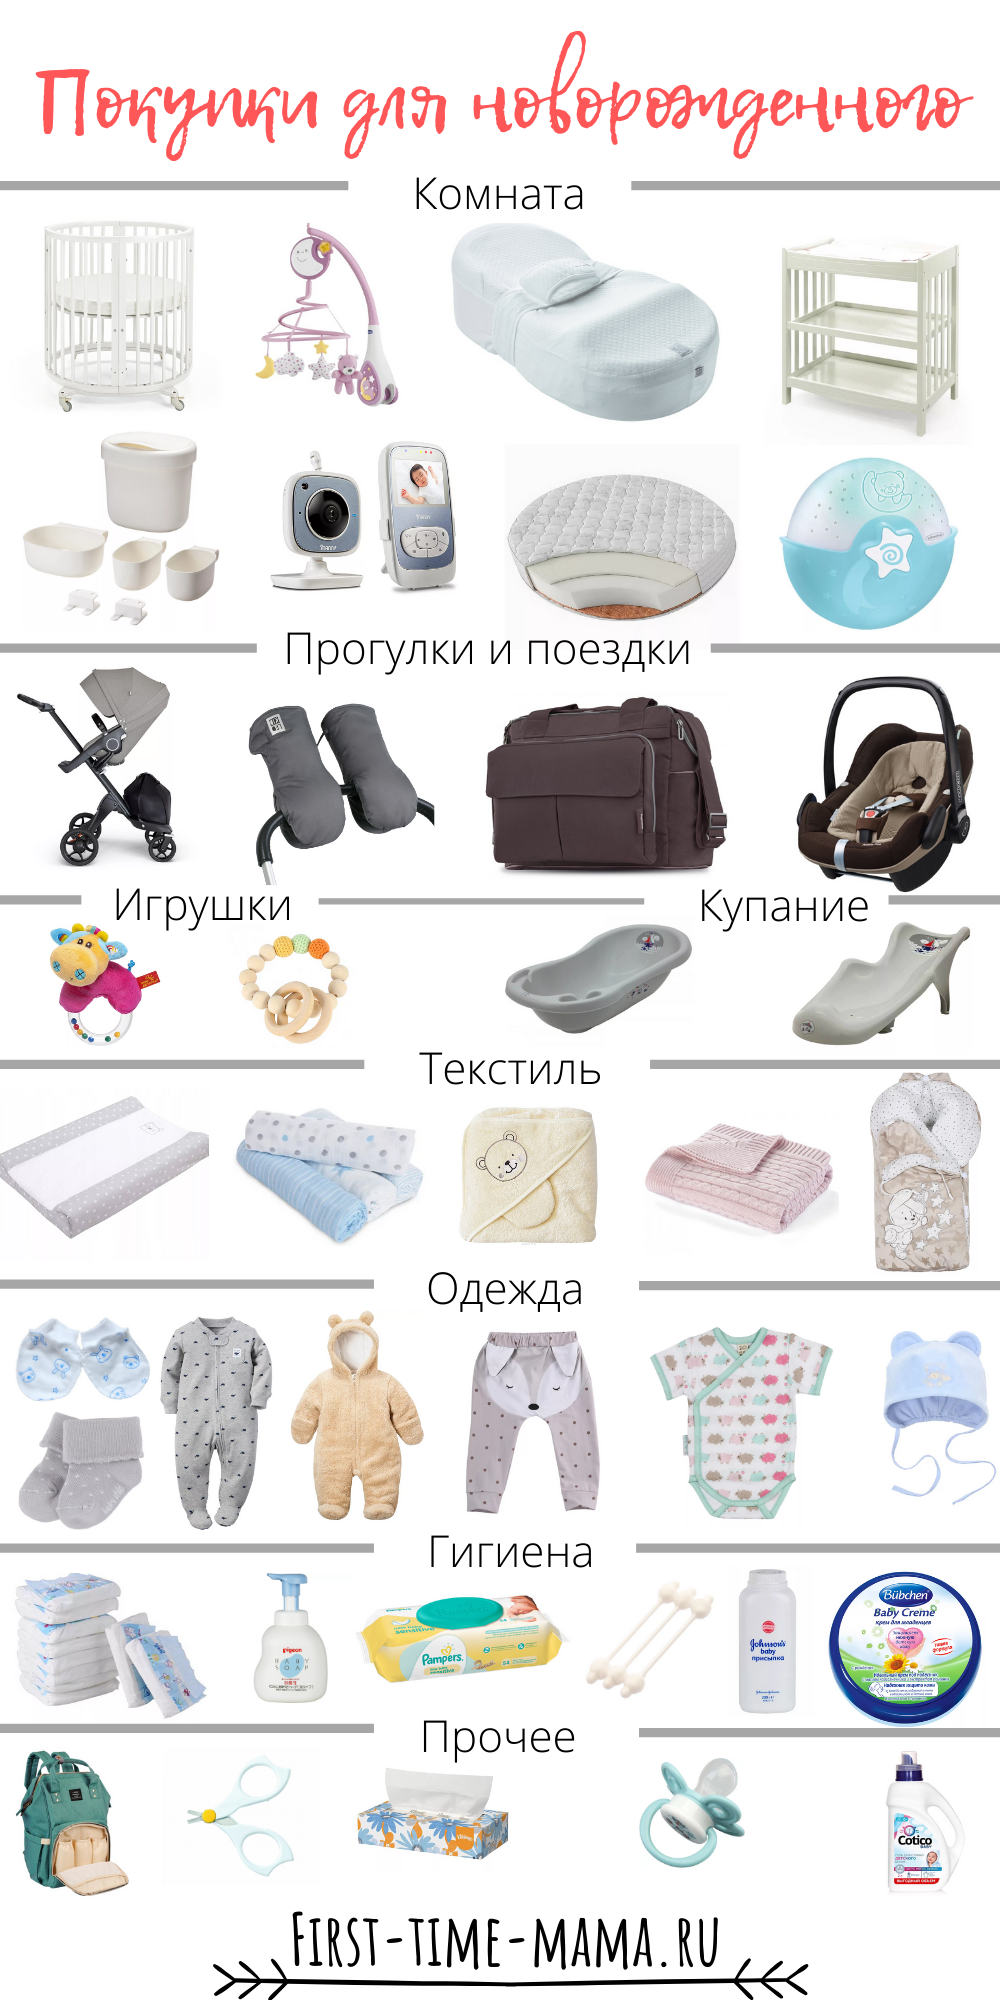 Что нужно купить новорожденному на первое. Одежда для новорожденного список необходимого. Нужные вещи для новорожденных. Необходимые предметы для новорожденного. Список однждыдля новорожденного.